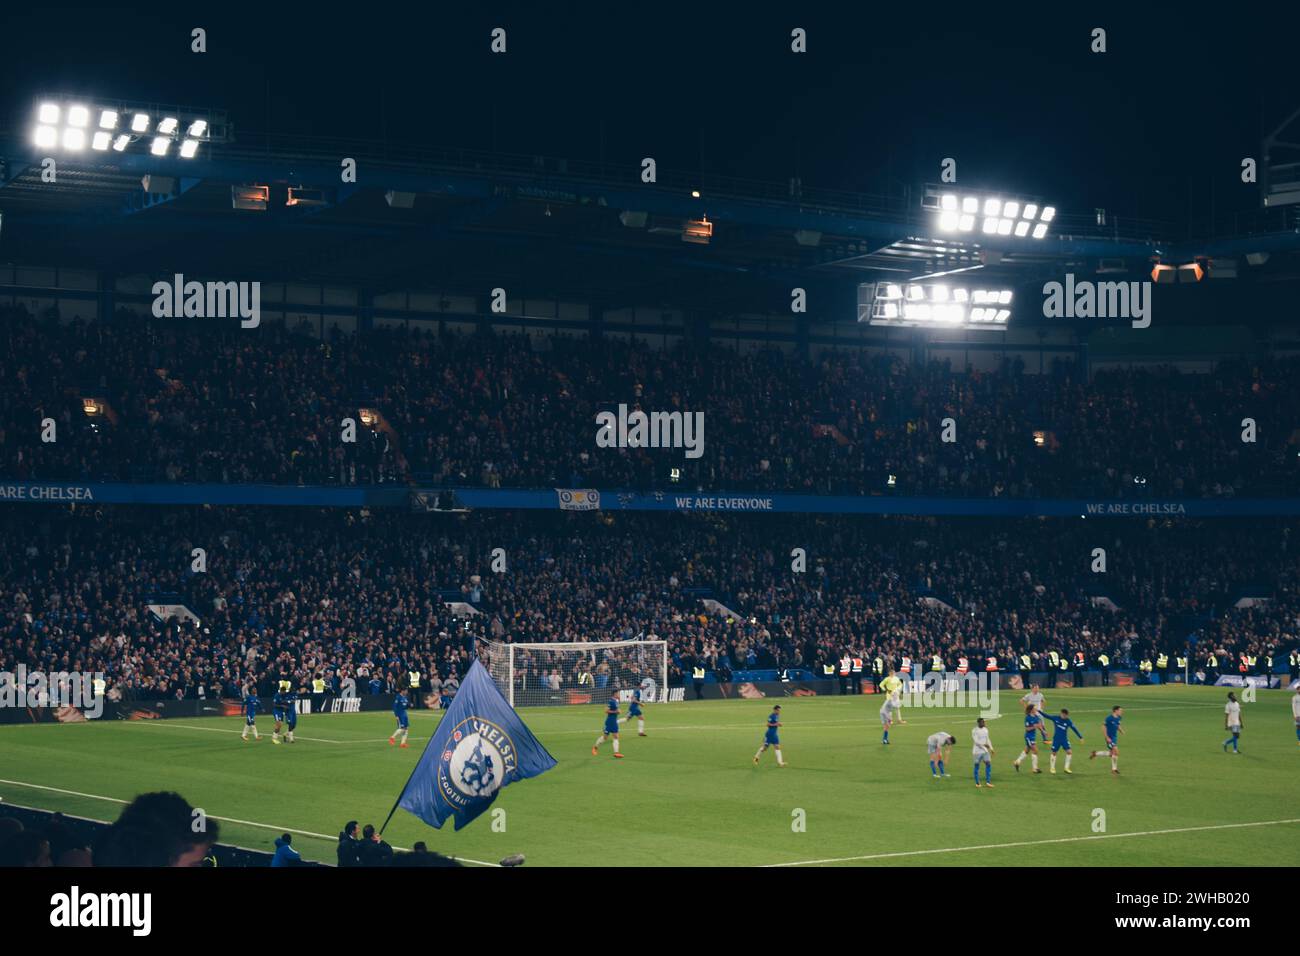 Match à Stamford Bridge entre Chelsea et Everton, Angleterre, le 25 octobre 2017 Banque D'Images